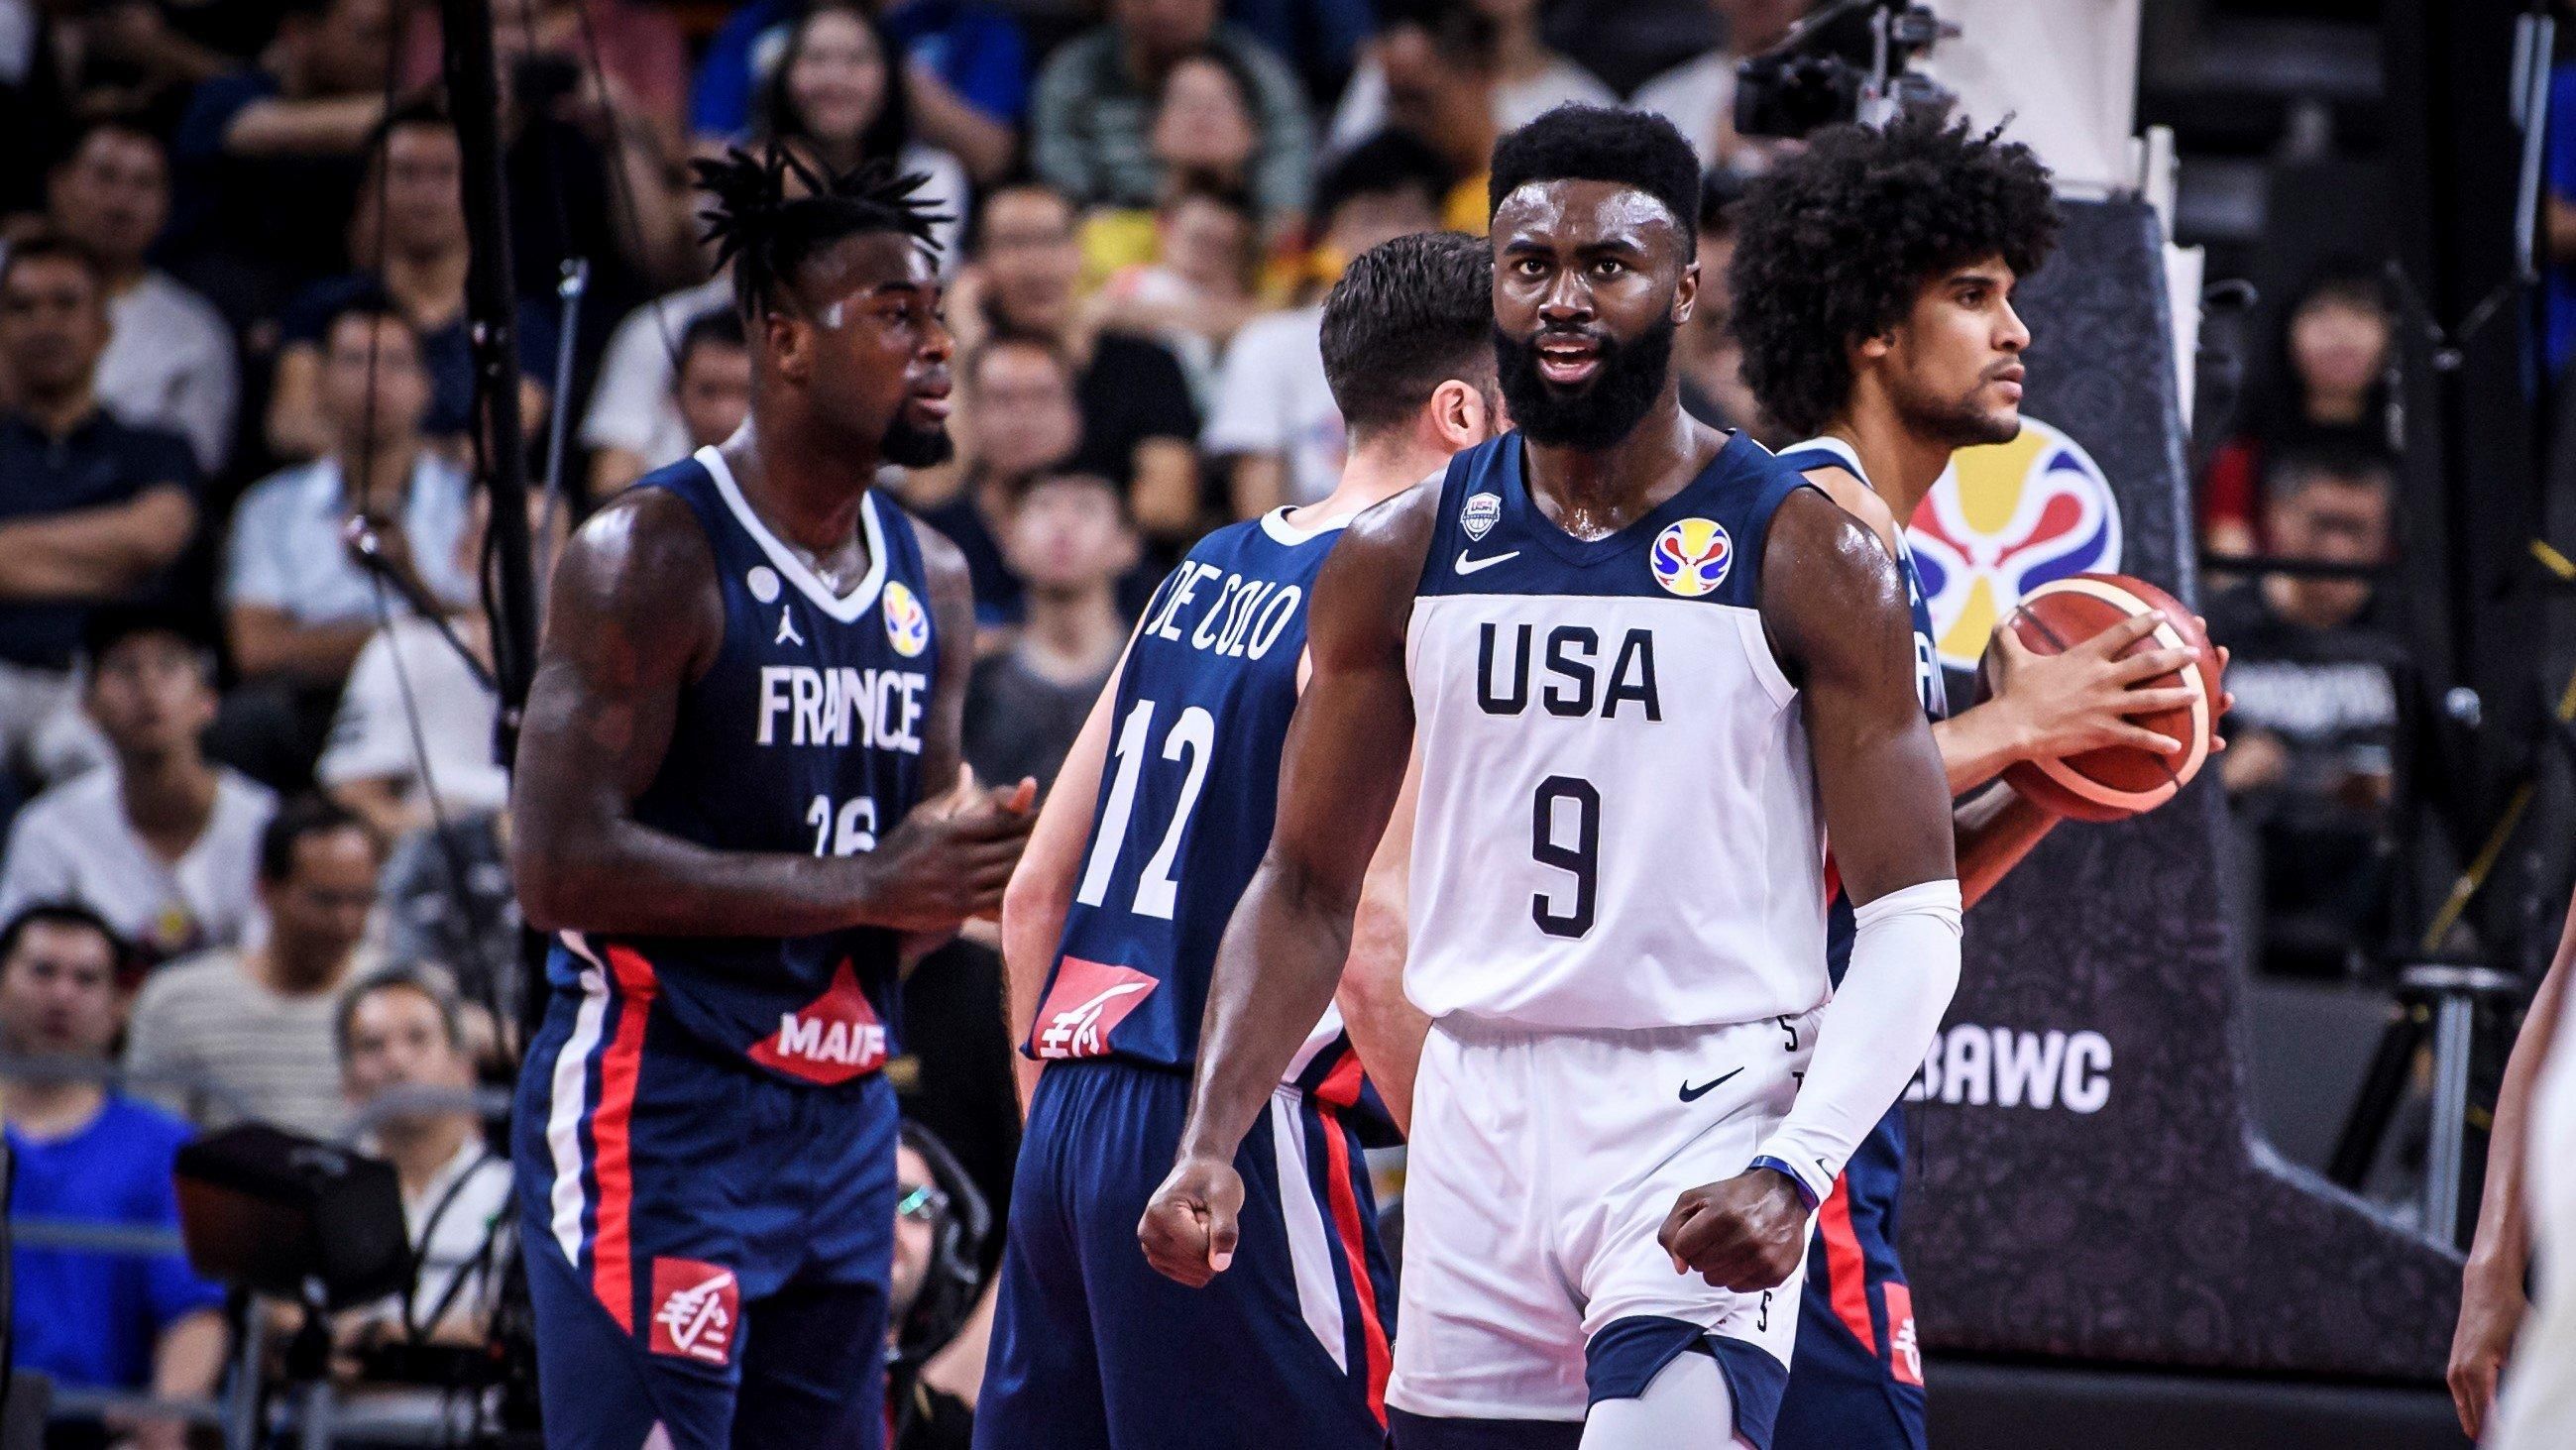 США сенсационно проиграли Франции в 1/4 финала Кубка мира по баскетболу, пропустив рывок +18